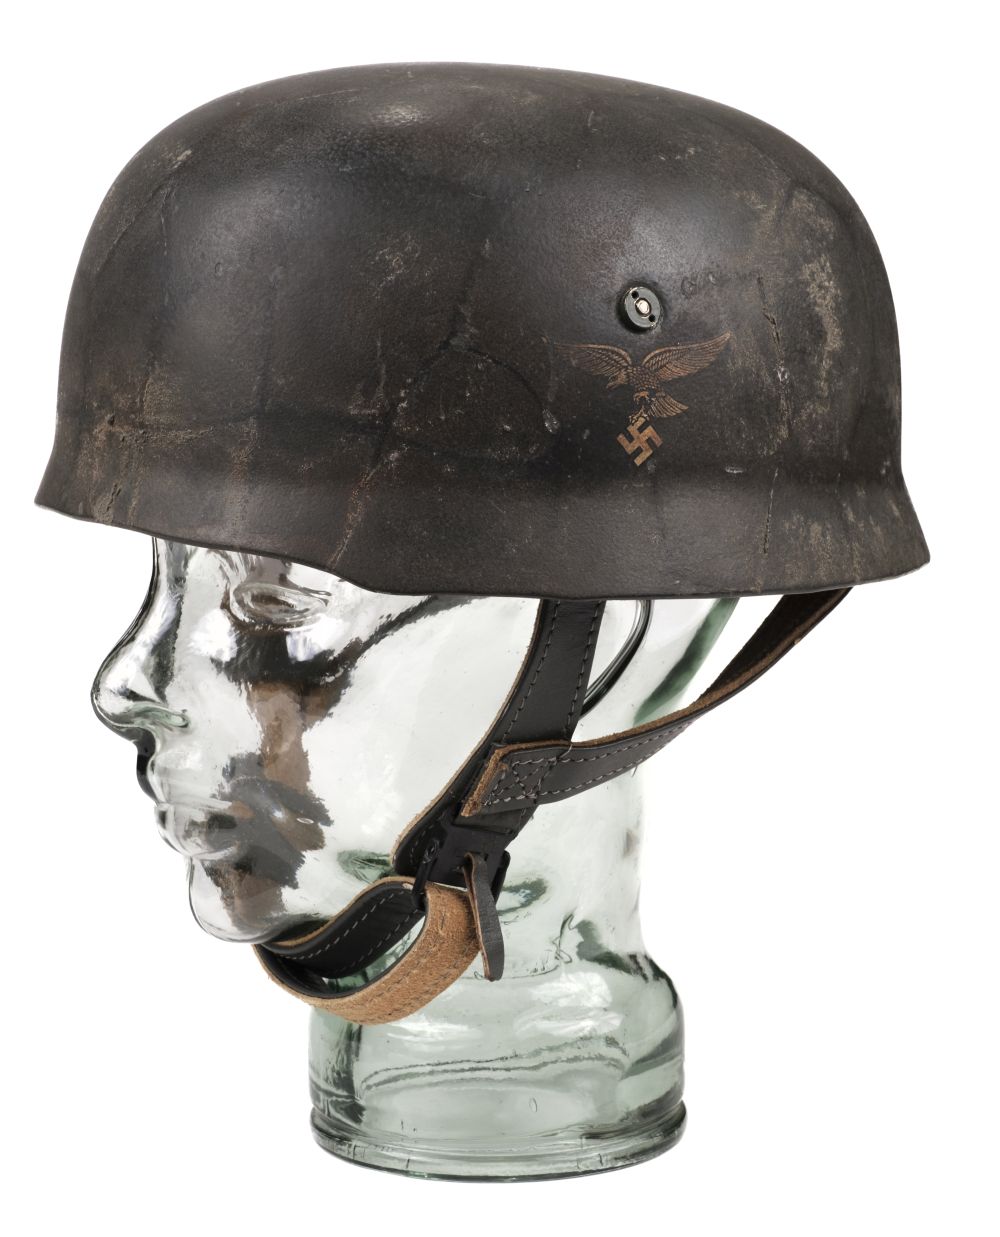 German Helmet. WWII German Paratroopers (Fallschirmjäger) reproduction steel helmet